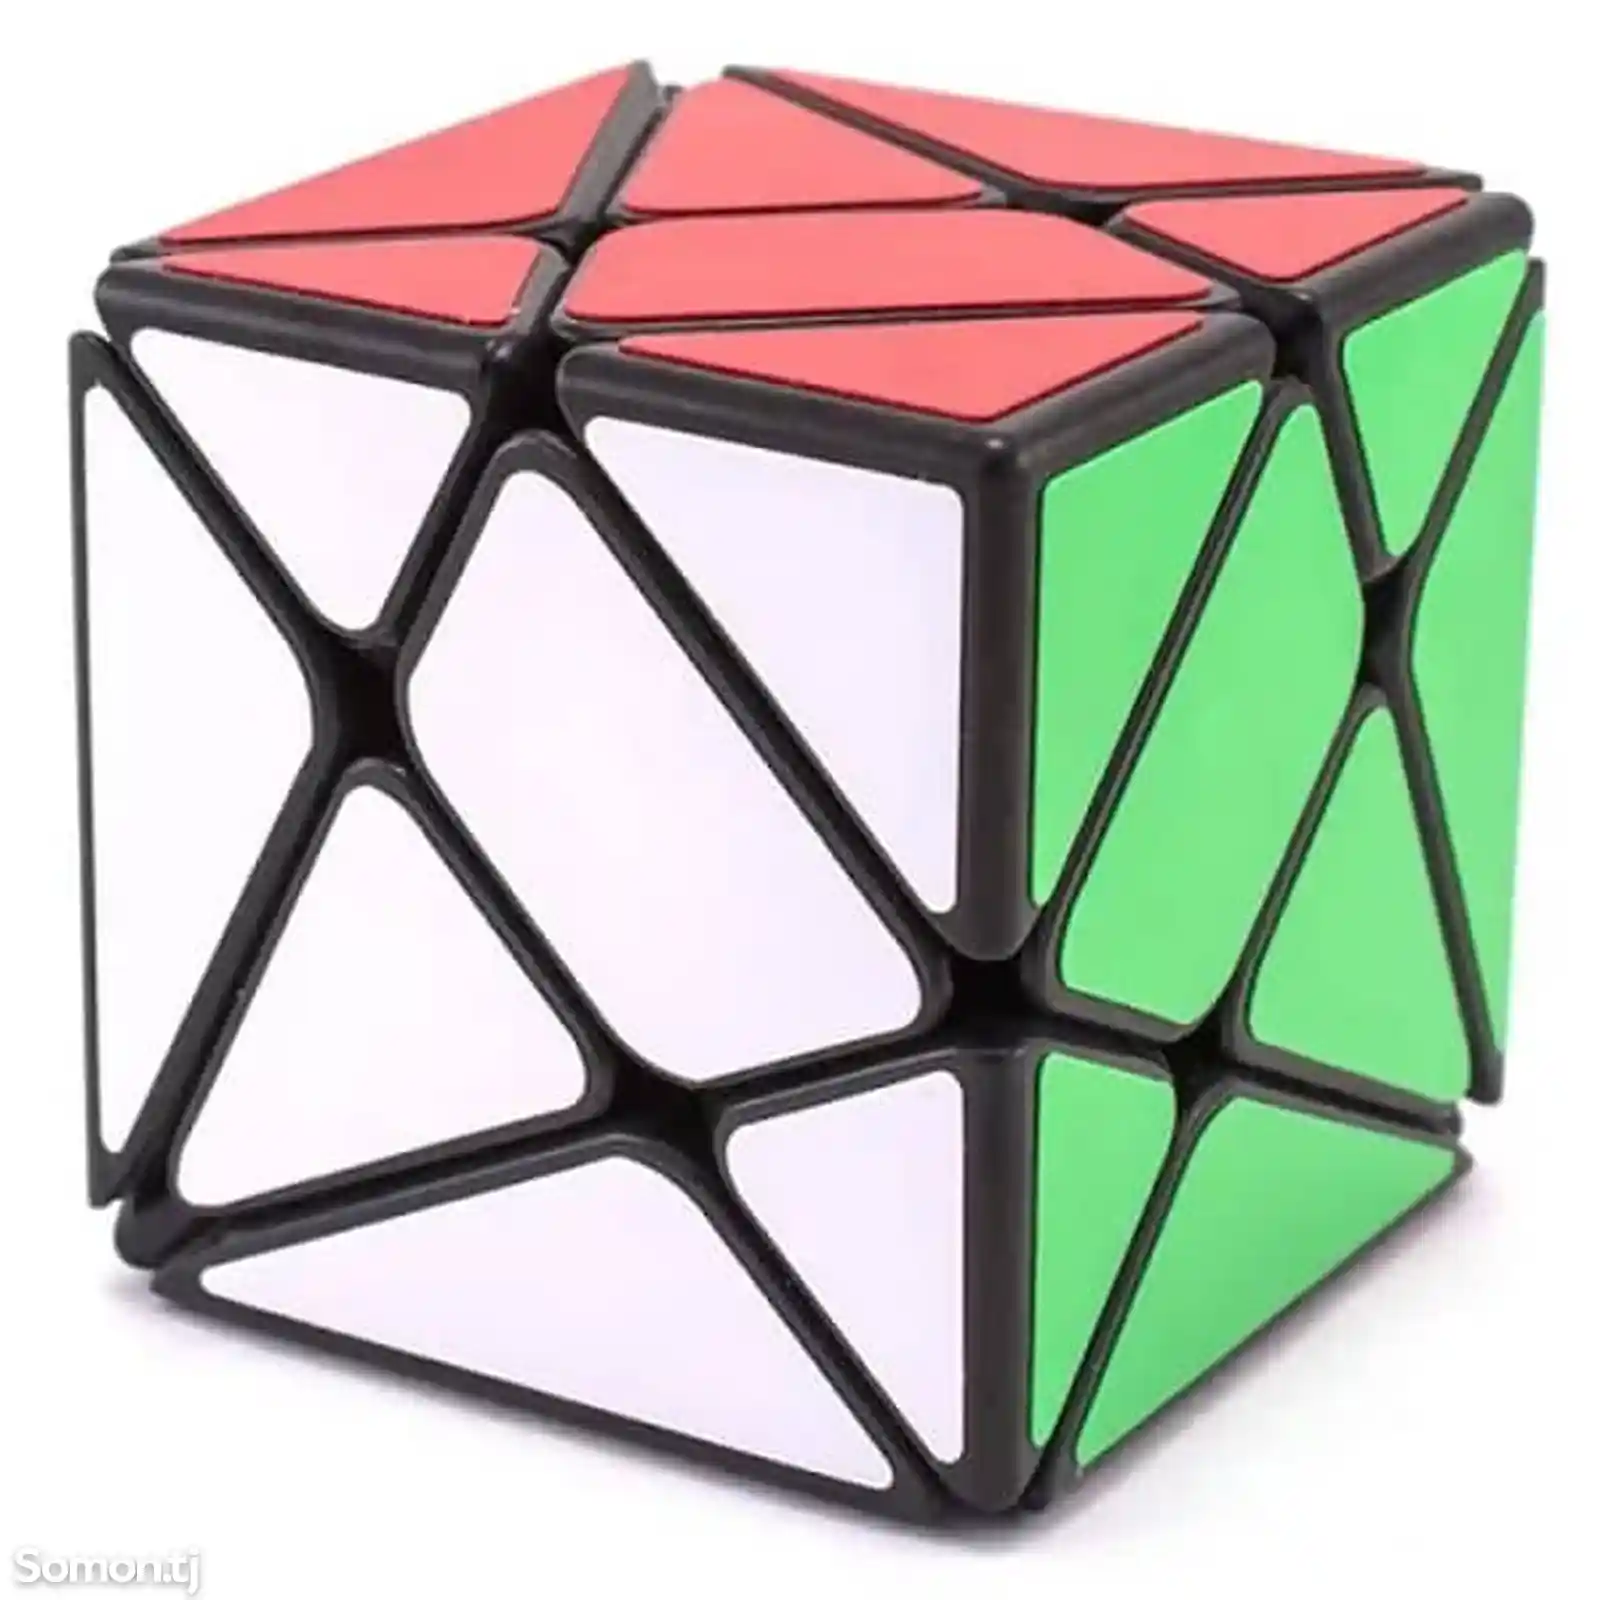 Аксис куб кубика Рубика, Axis cube-3